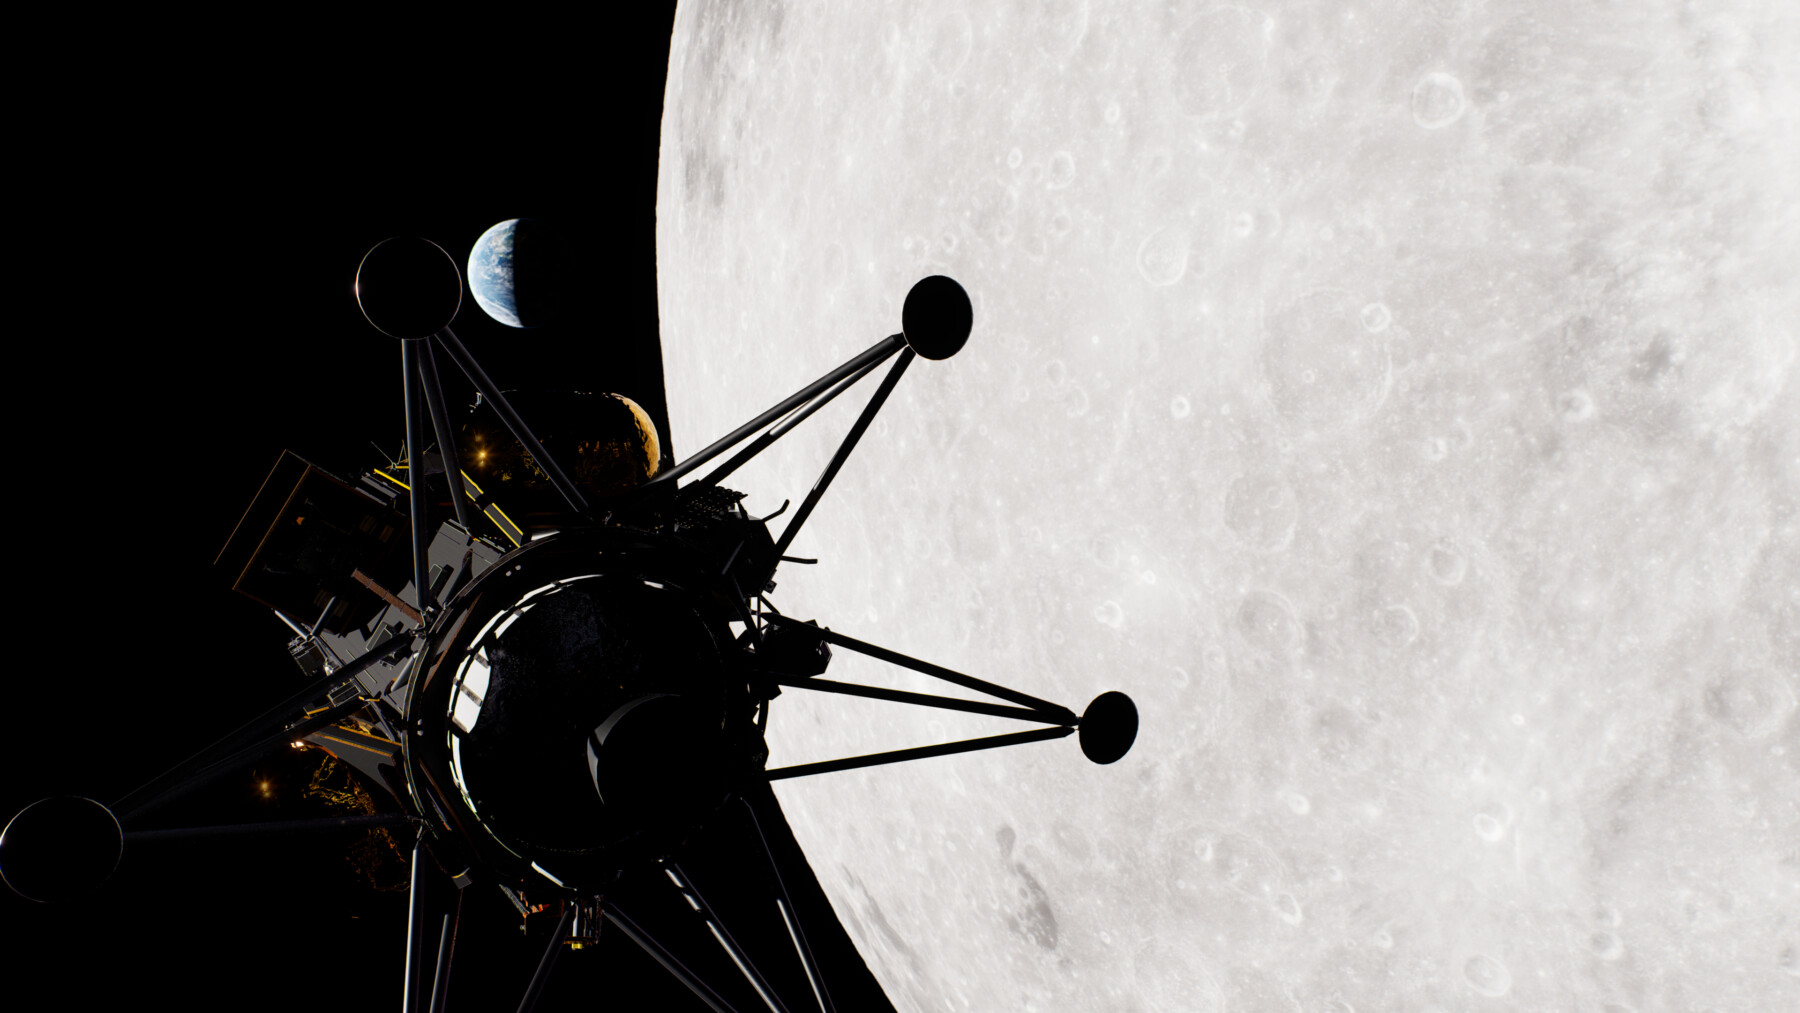 مركبة فضائية محلقة أمام كوكب رمادي اللون.